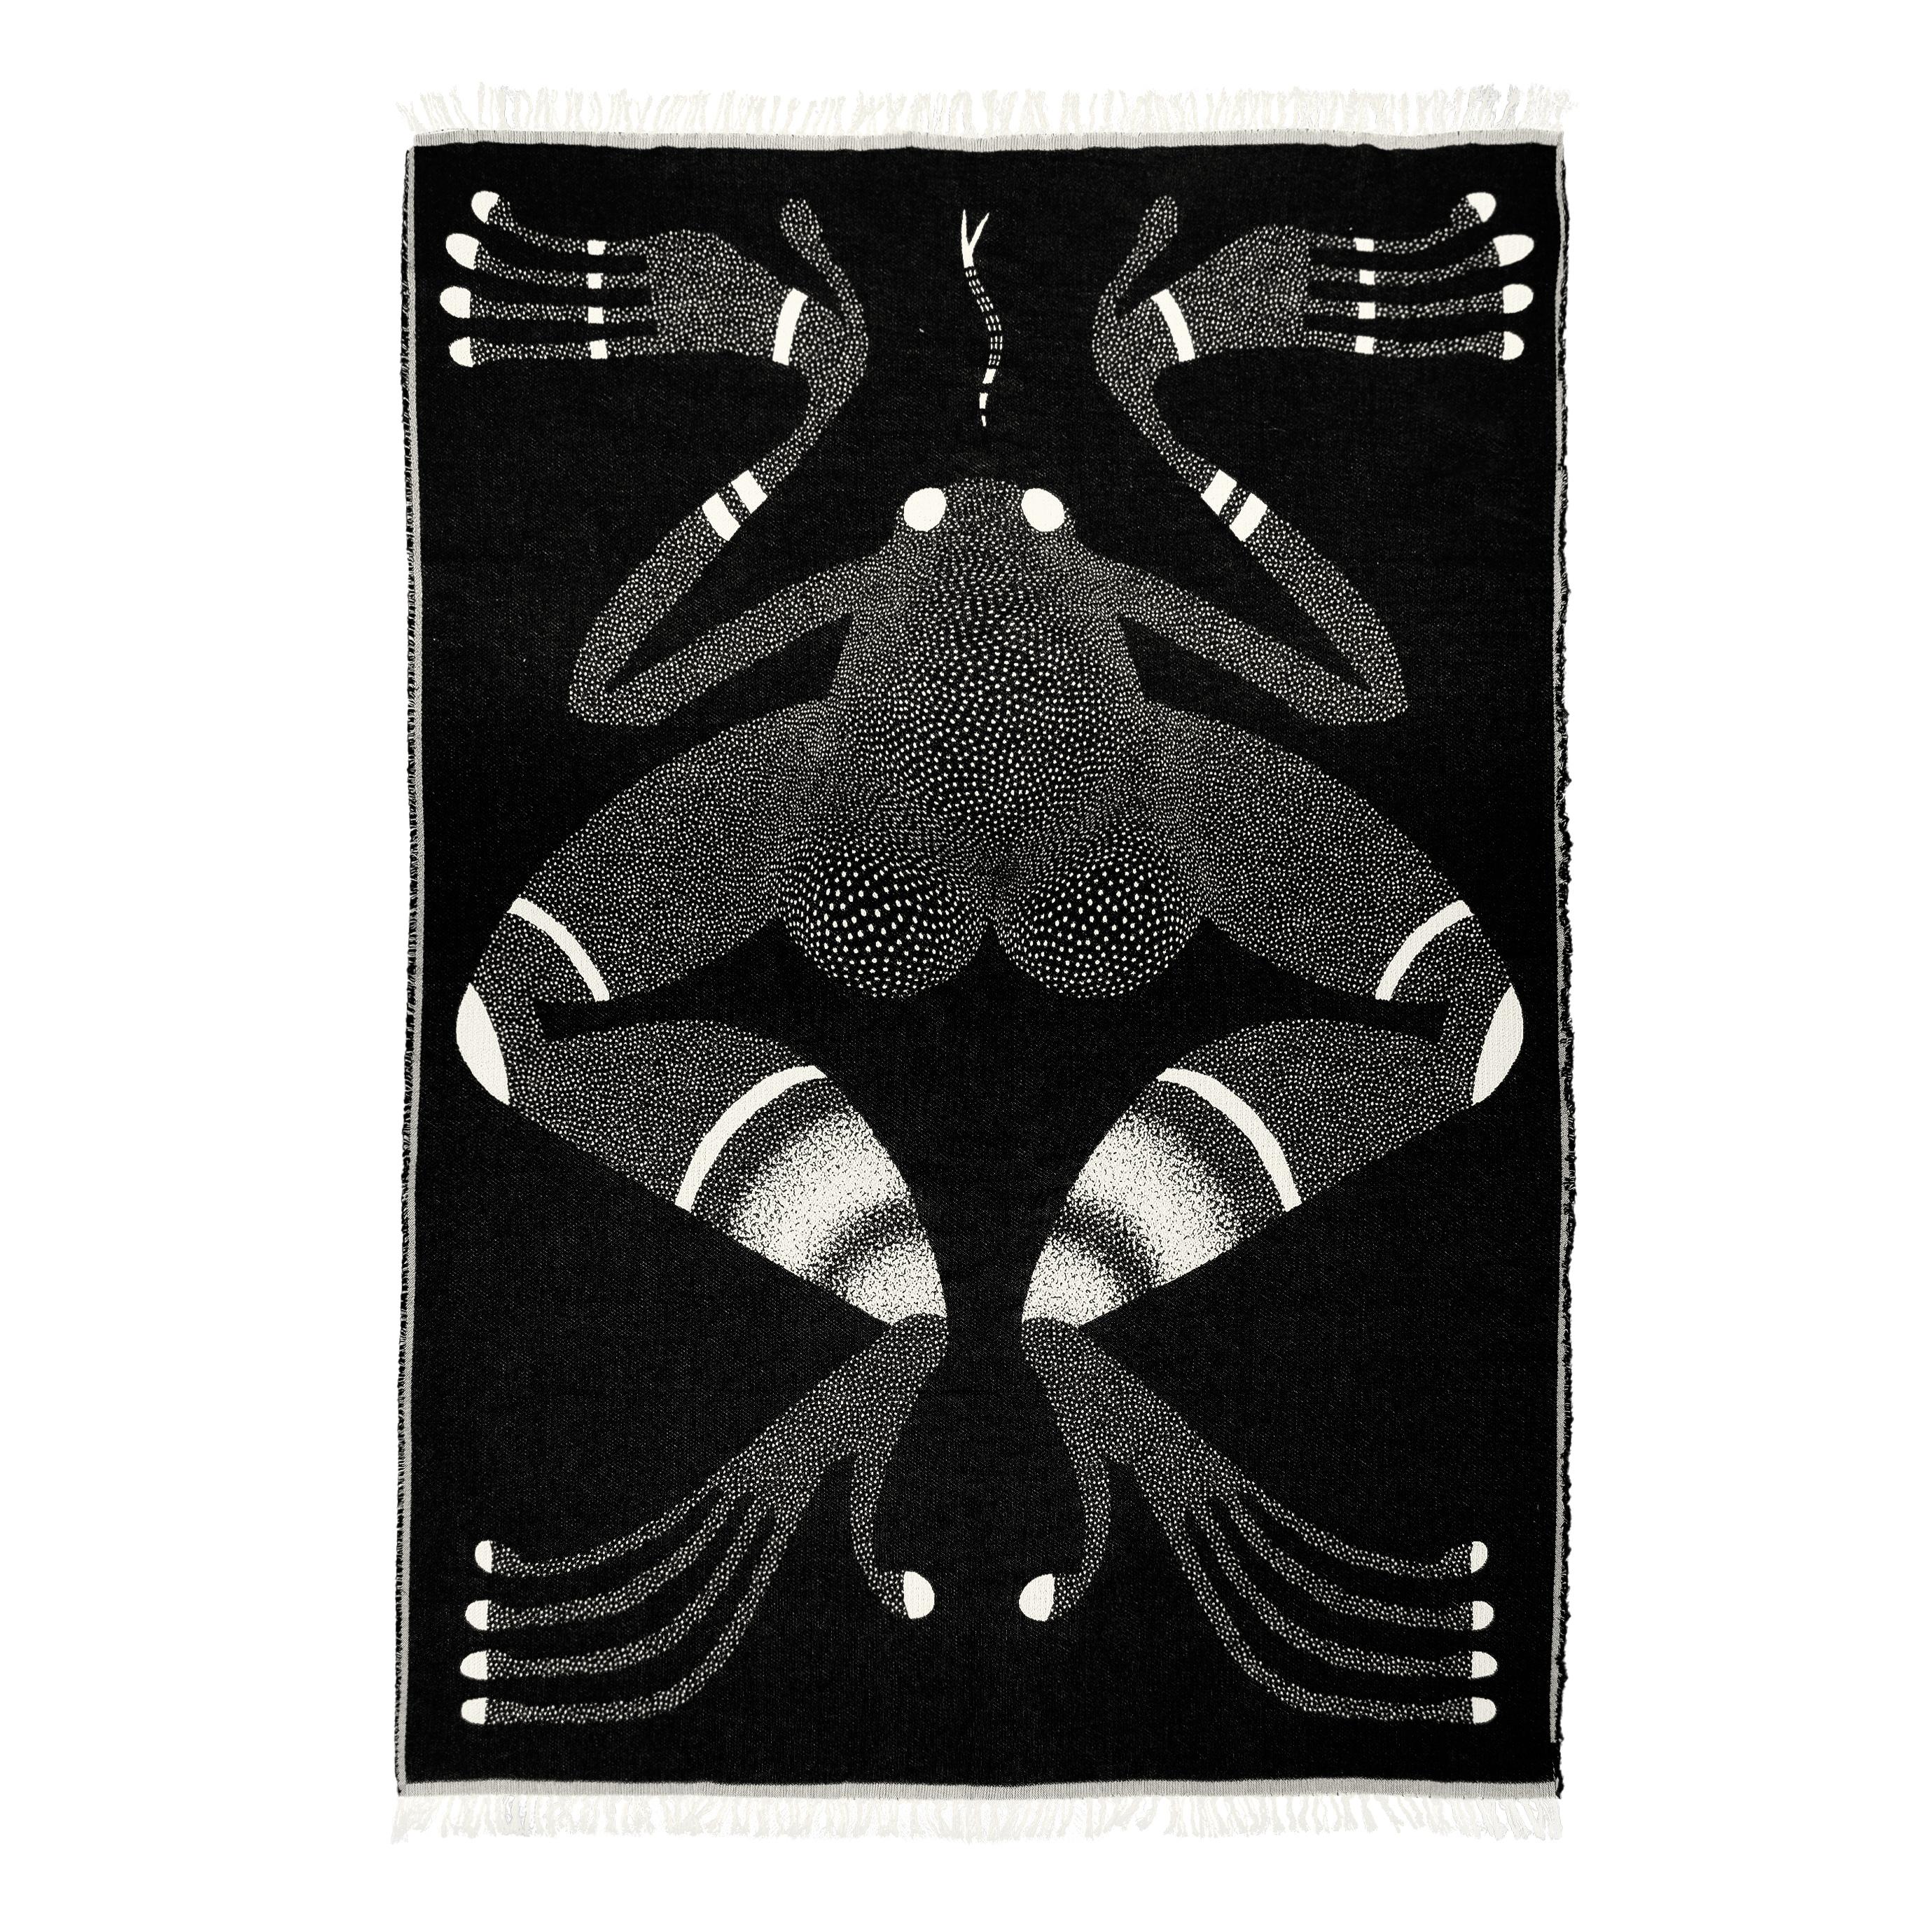 Schöne Froschdecke aus Baumwolljacquard von Barbara Janczak.

Die Serie Animals umfasst weiche Baumwolldecken und Bettüberwürfe mit faszinierenden Mustern mit Tiermotiven. Oder vielleicht menschliche? Die Helden dieser Serie beziehen sich auf die